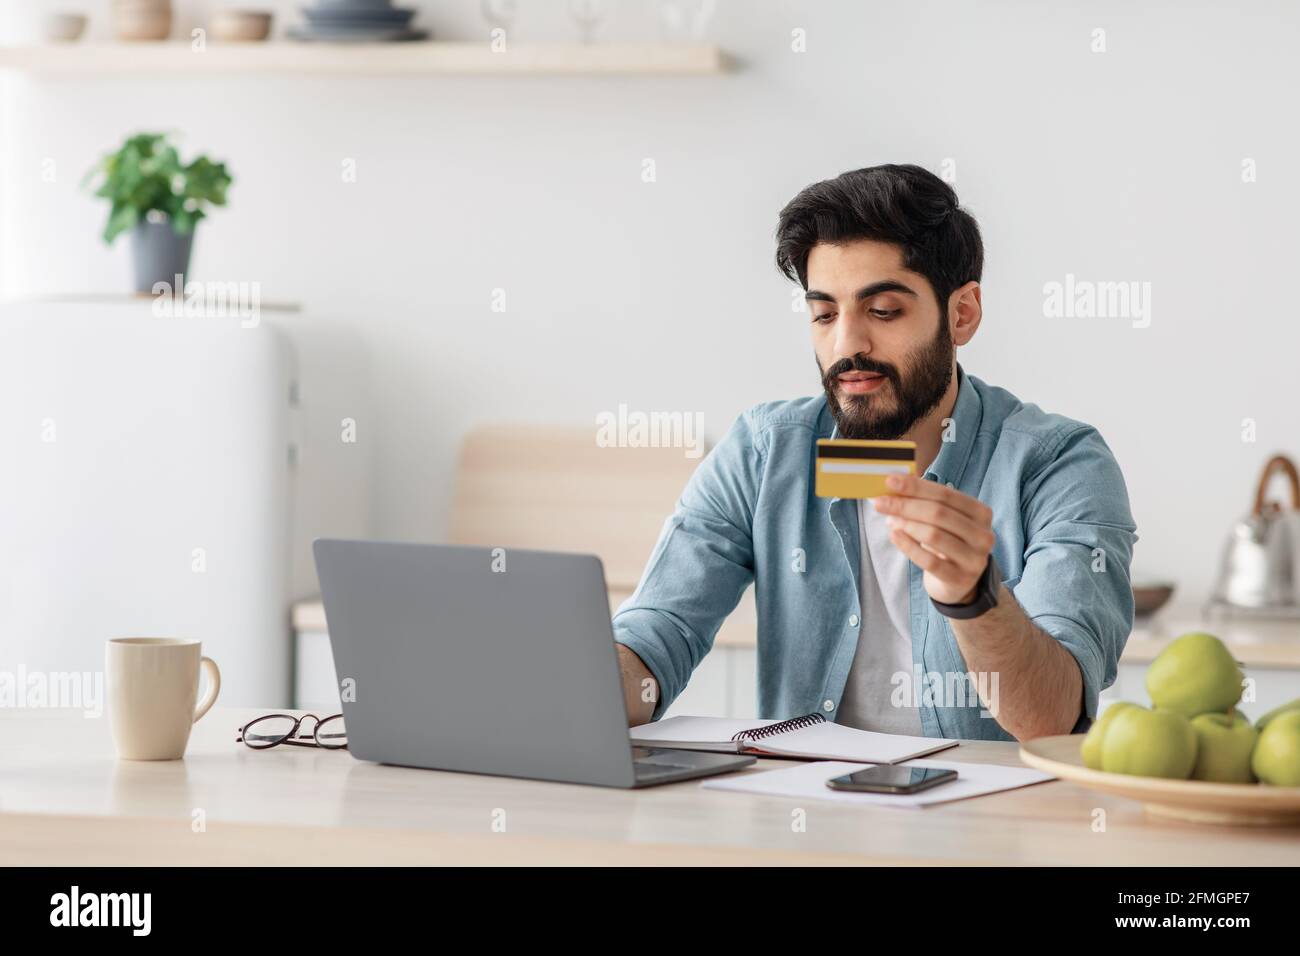 Homme arabe effectuant des paiements en ligne avec ordinateur portable et carte de crédit, assis dans kithcen à la maison, espace vide Banque D'Images